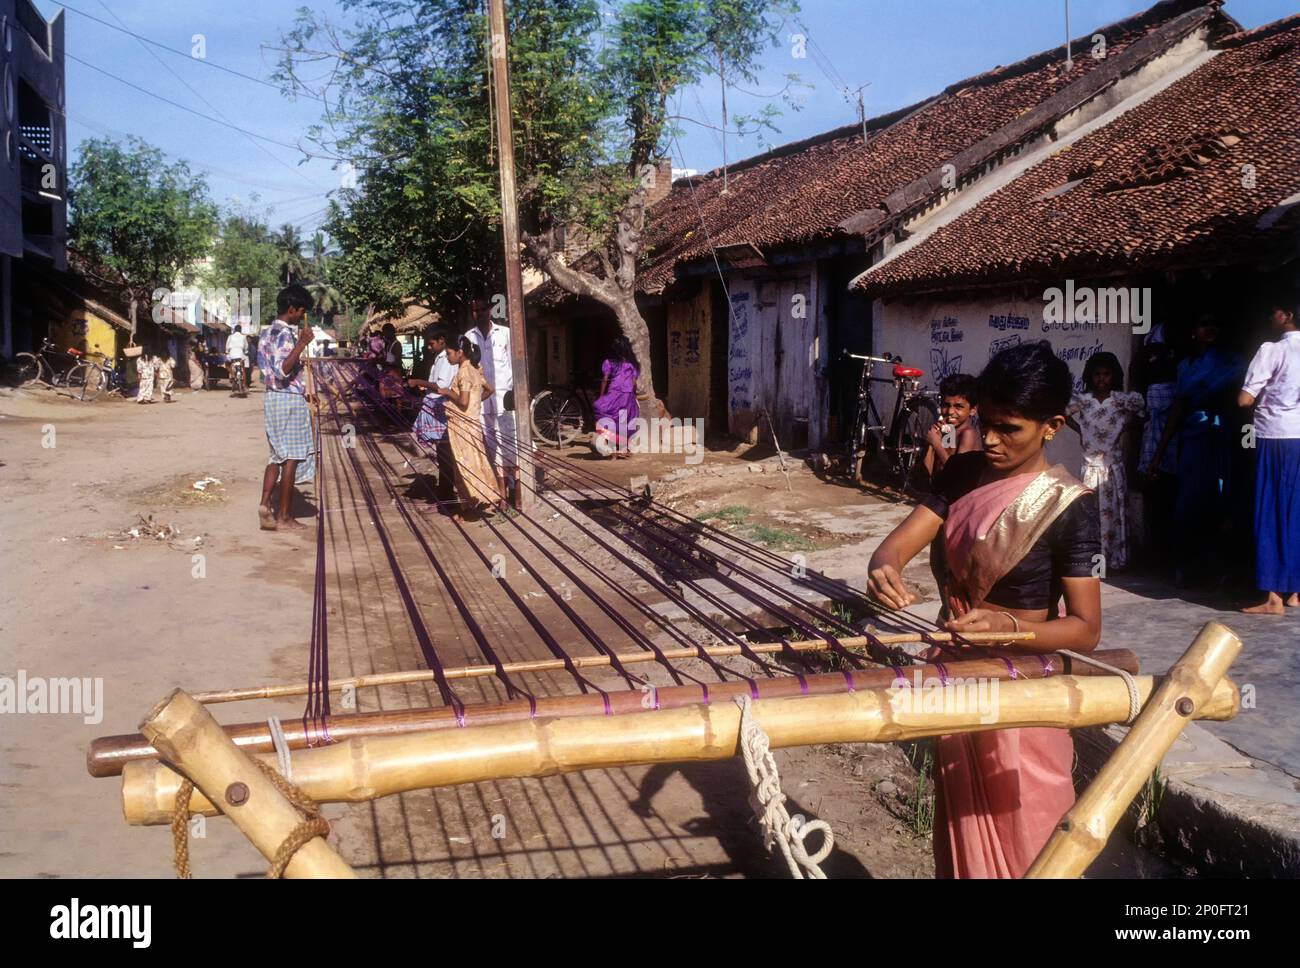 Ancienne tradition pratiquée par les tisserands, enlever les nœuds et sécher le fil de soie sur la rue de Pillaiyarpalayam, Kanchipuram, Tamil Nadu, Inde Banque D'Images